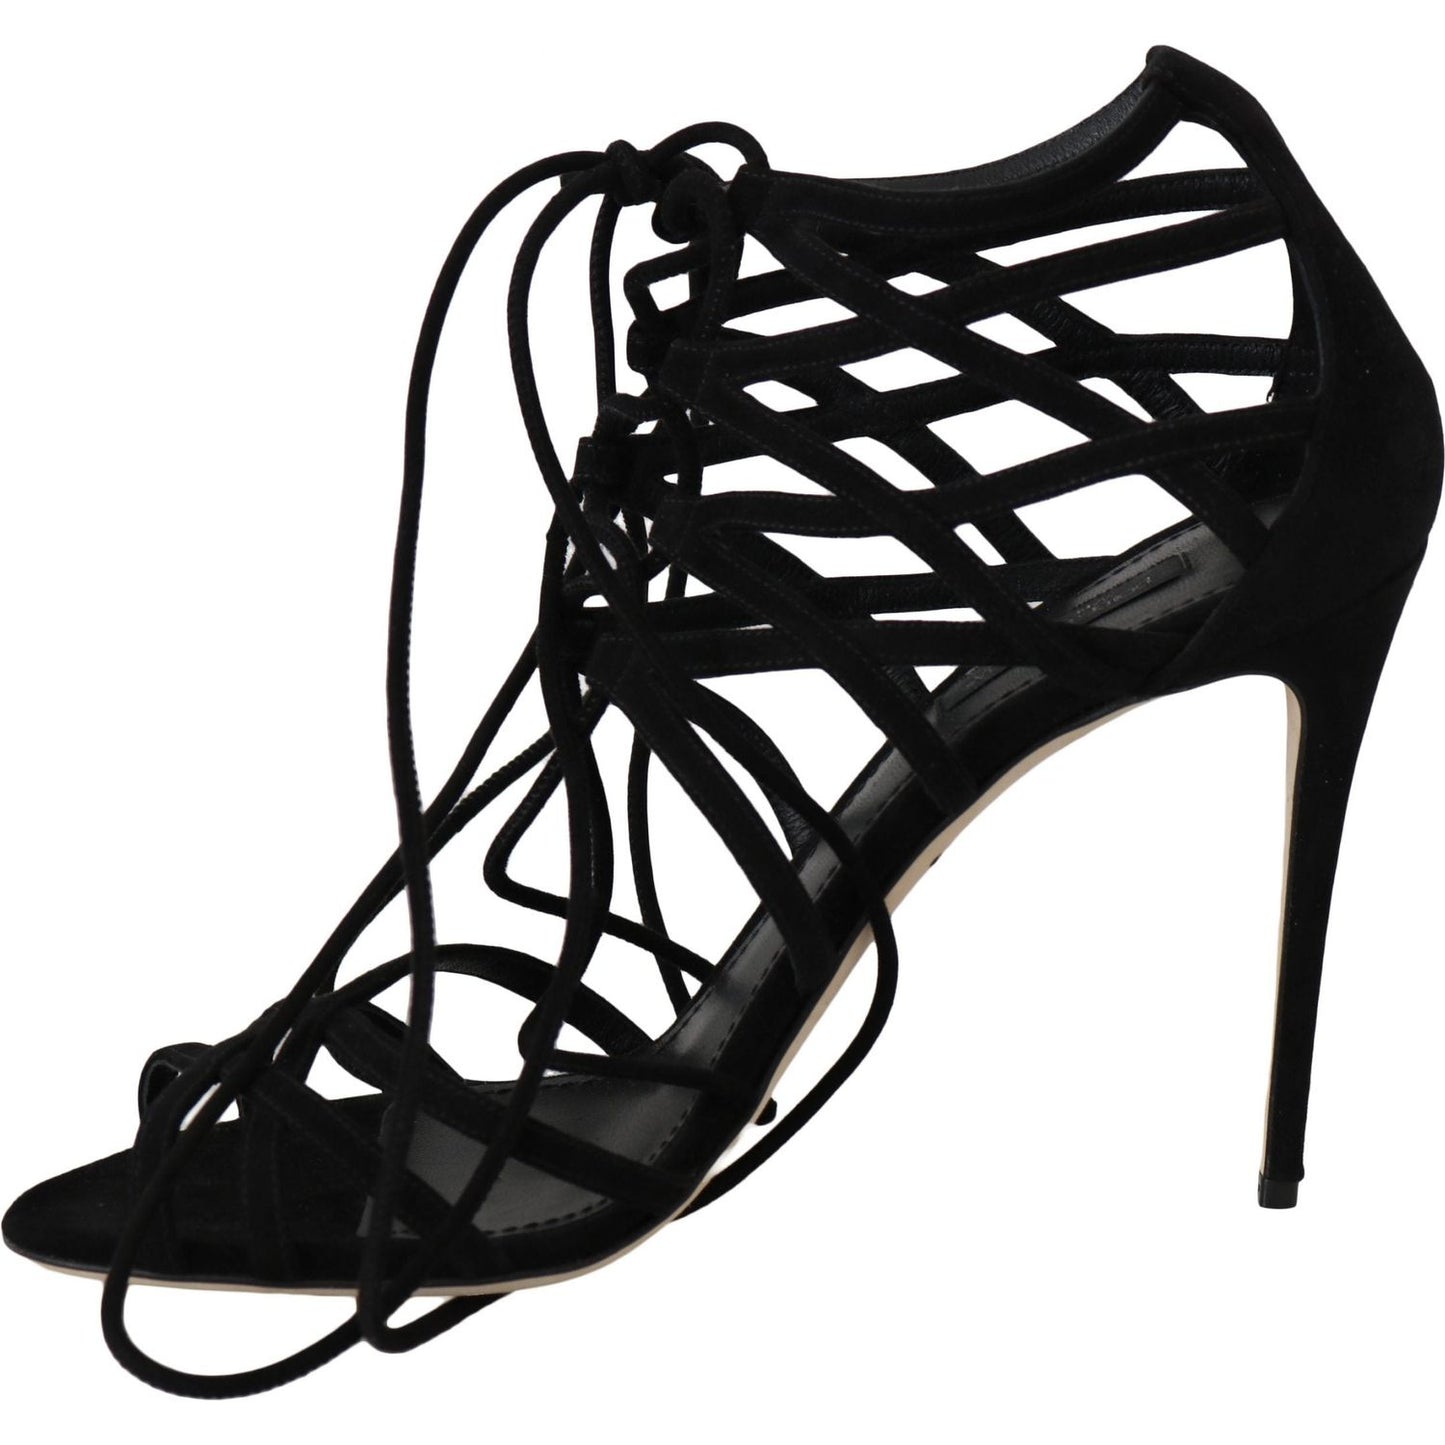 Dolce & Gabbana Elegant Black Suede Gladiator Stilettos black-suede-strap-stilettos-sandals